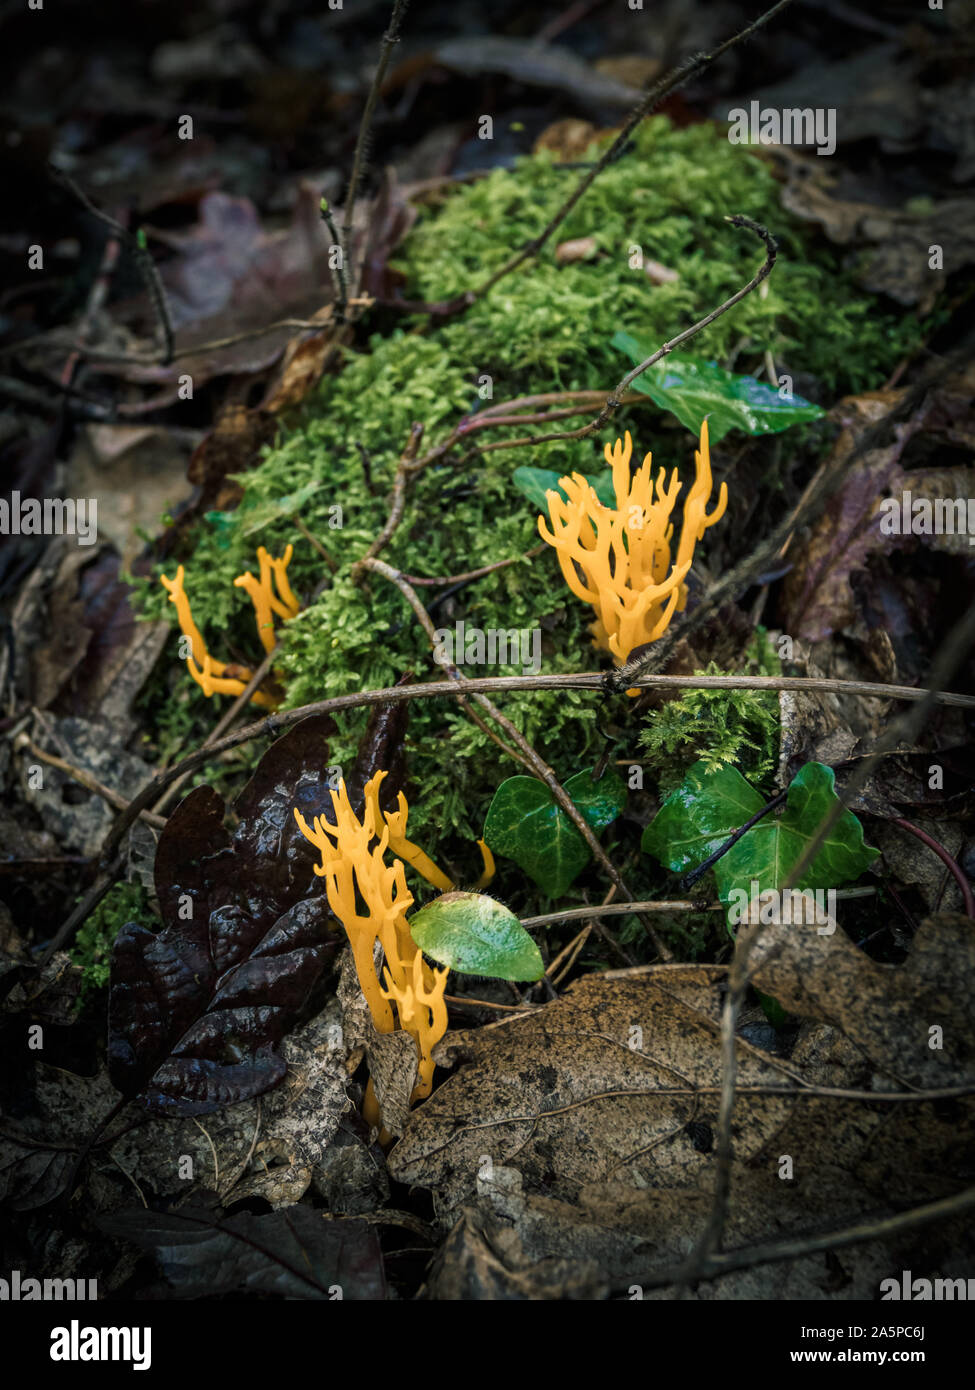 La culture des champignons sauvages étrange dans la forêt au cours de l'automne Banque D'Images